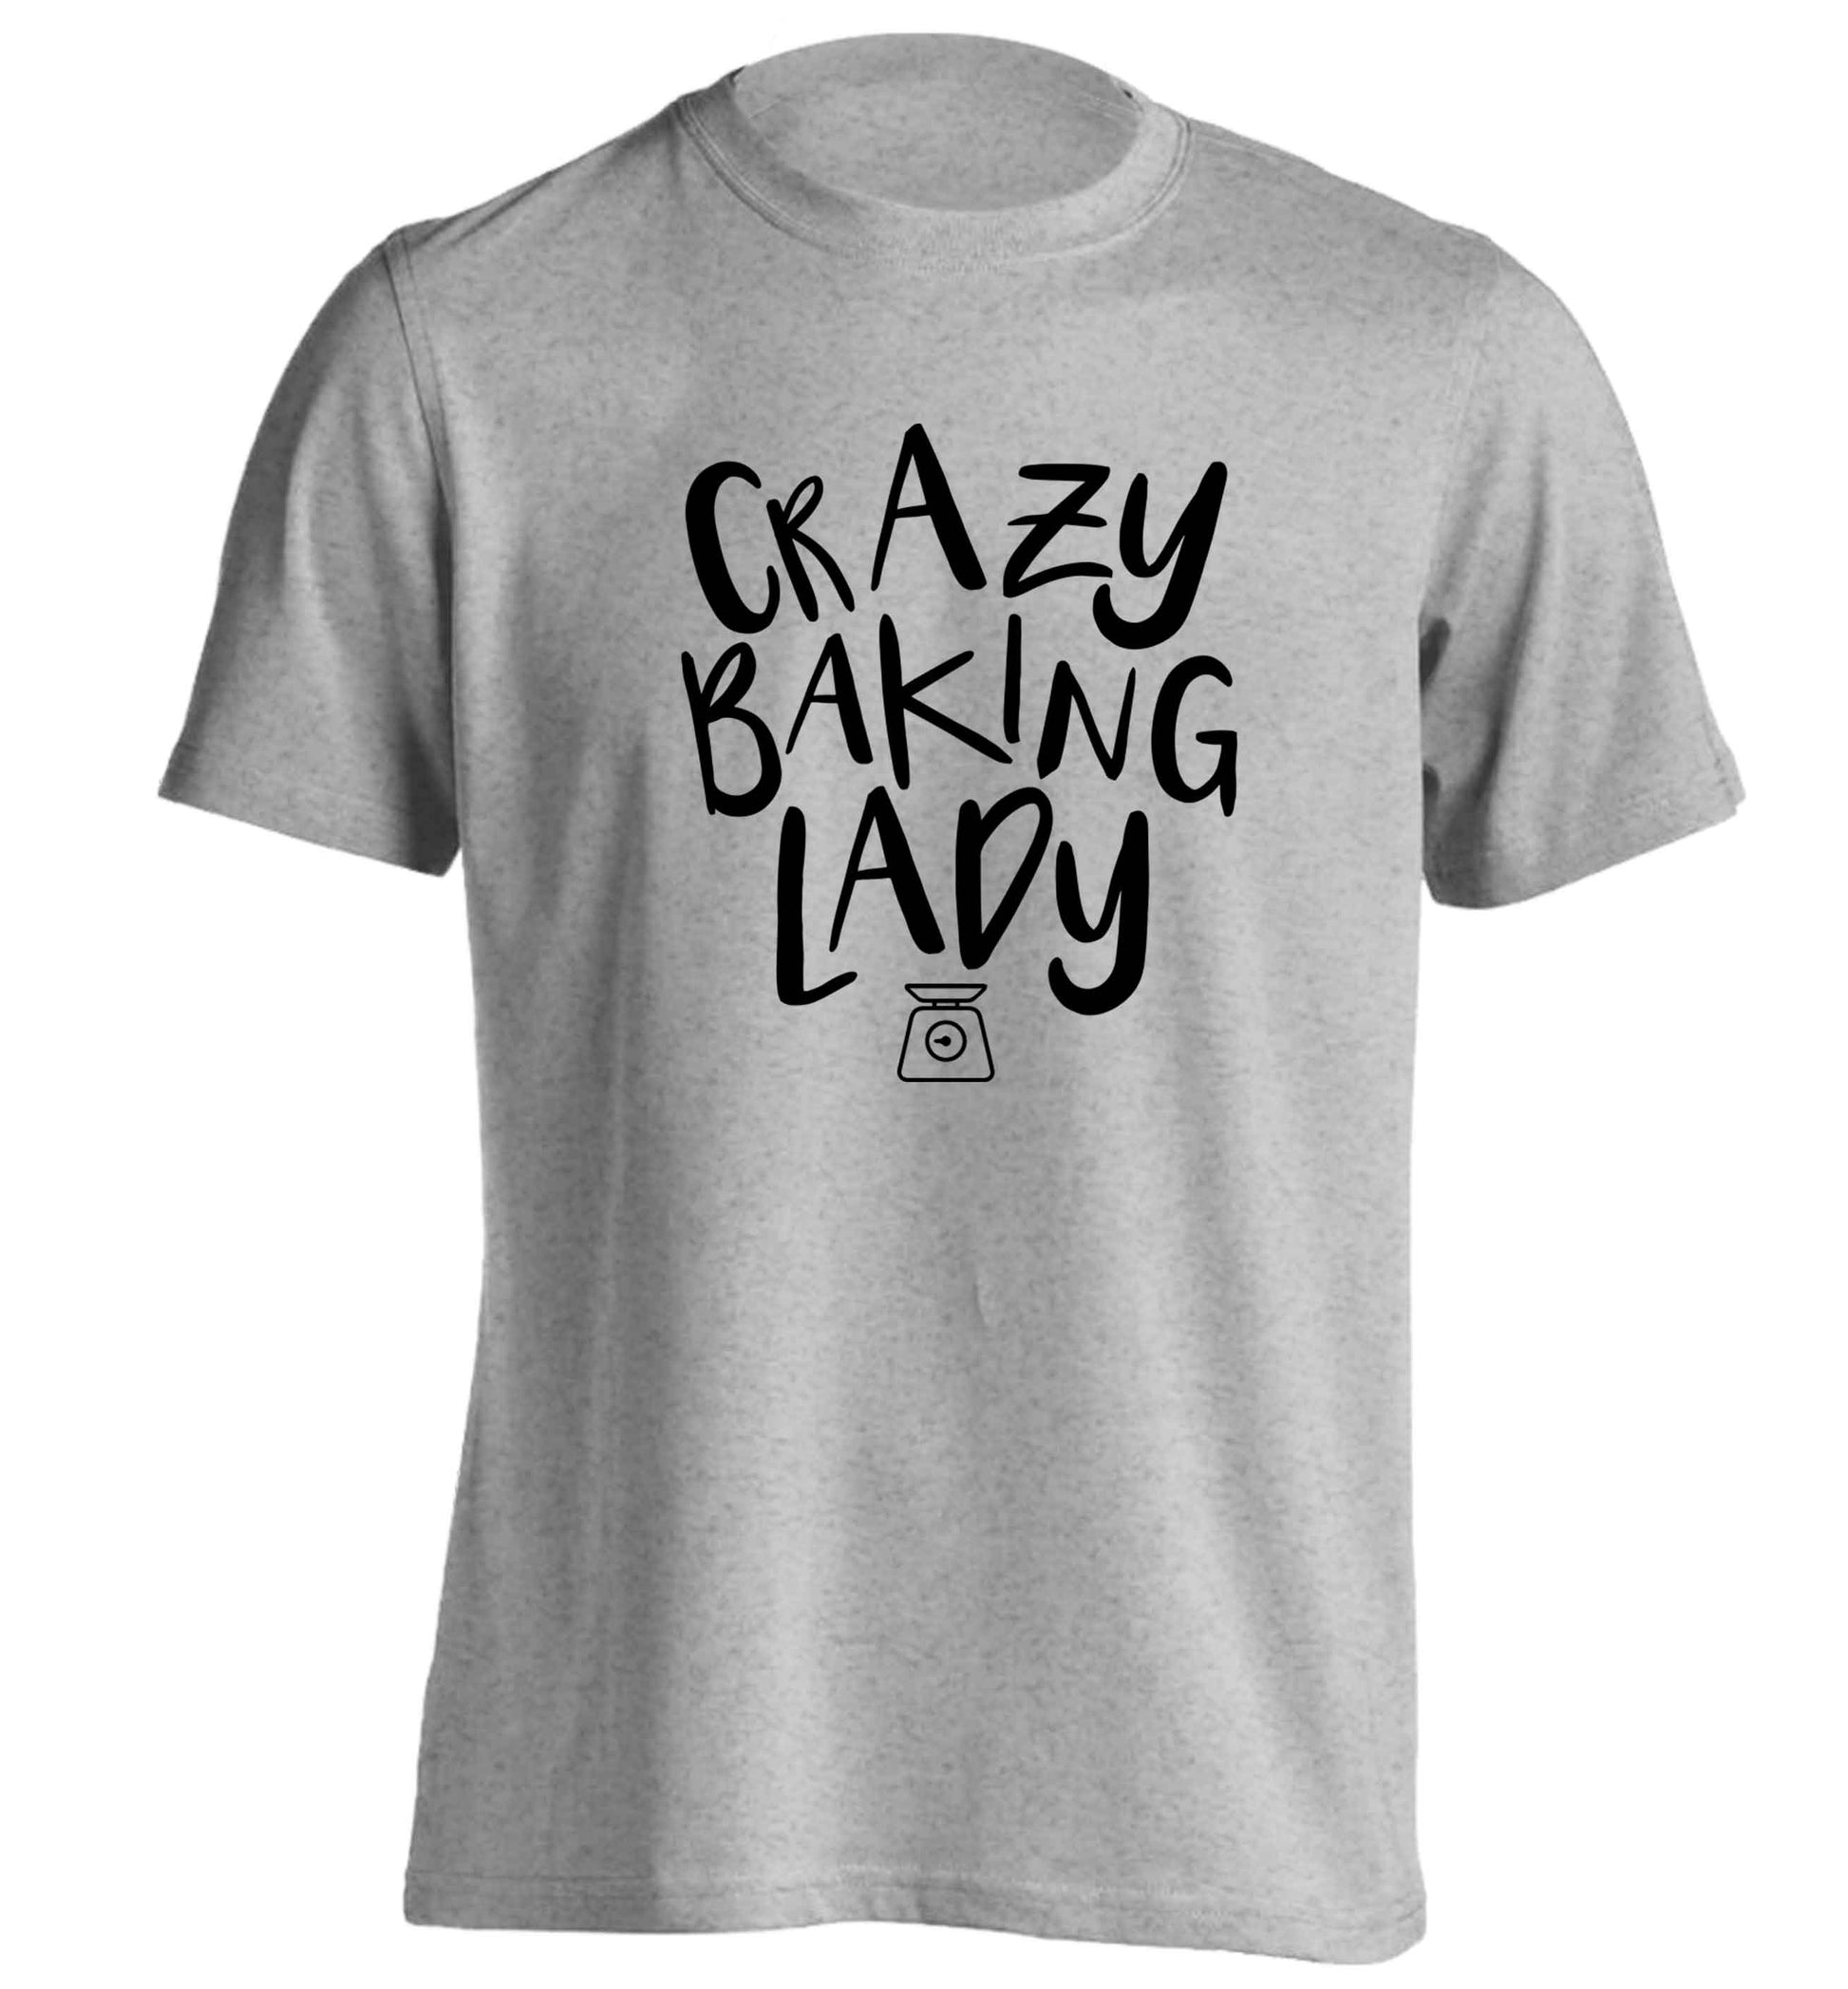 Crazy baking lady adults unisex grey Tshirt 2XL